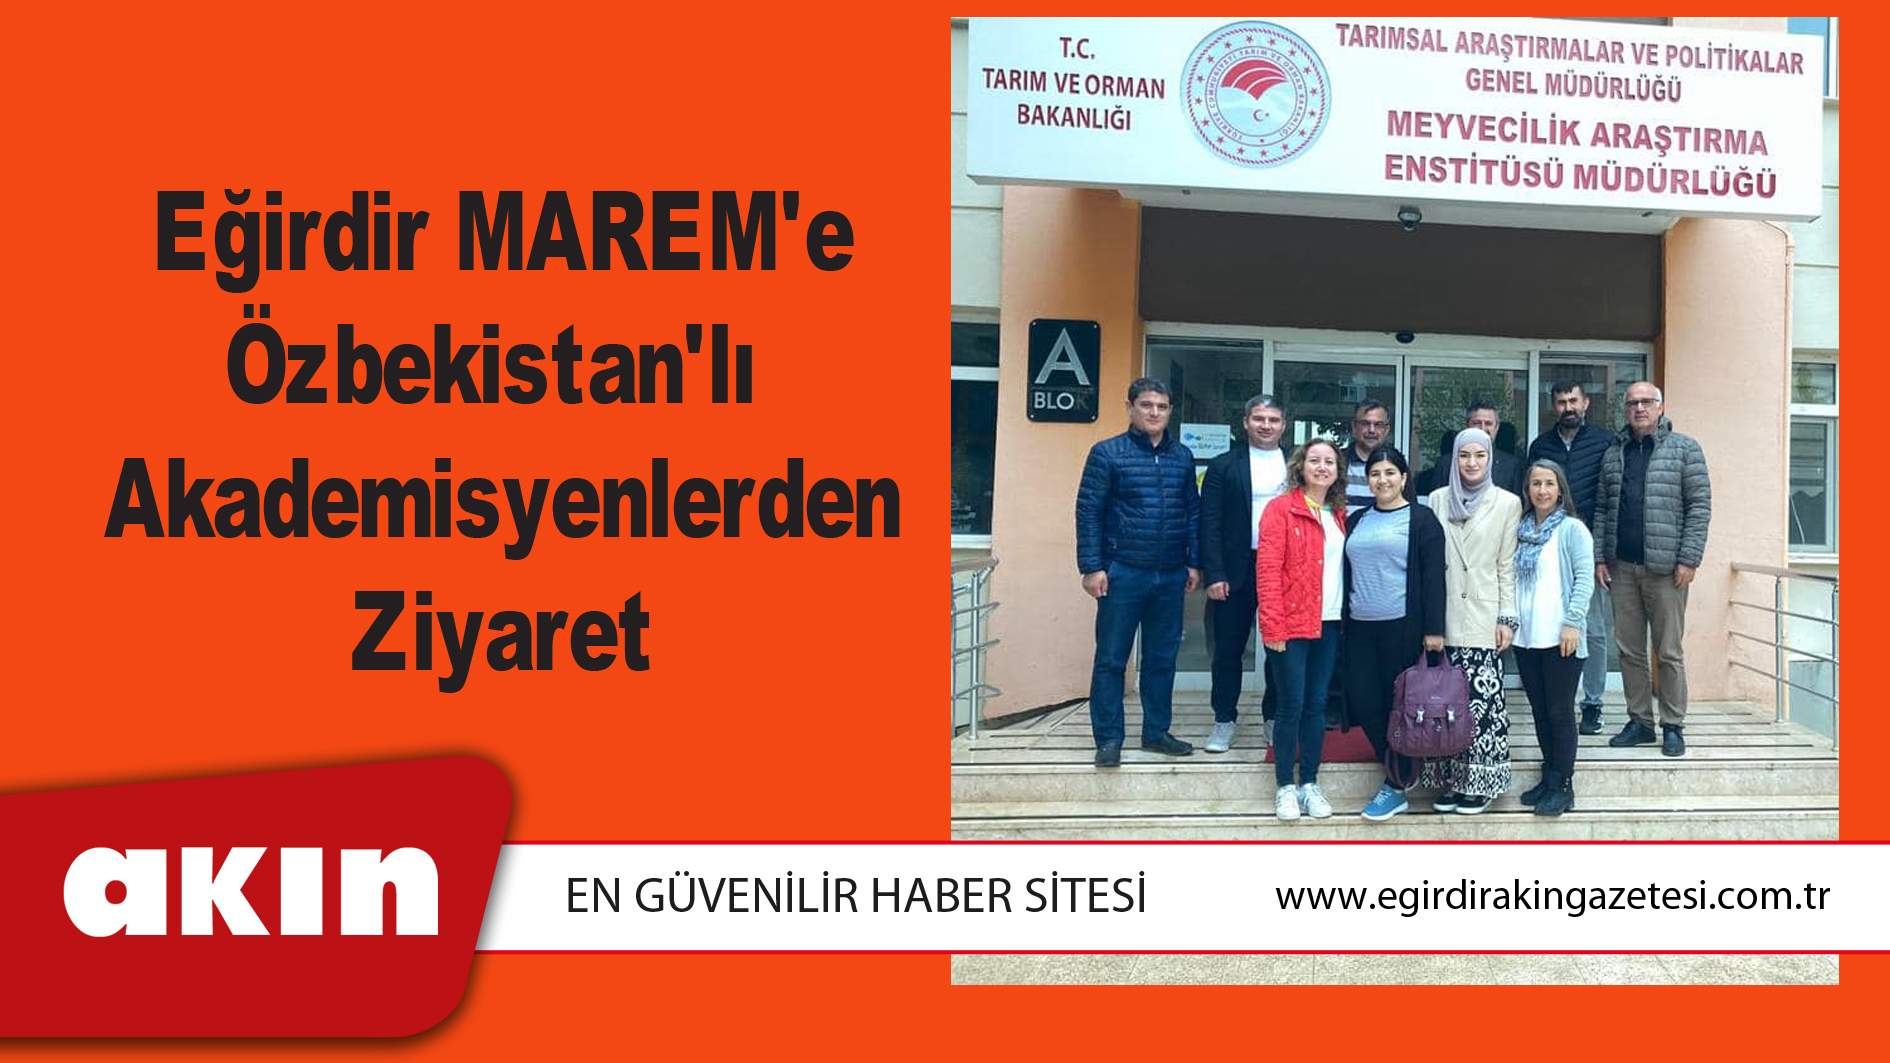 eğirdir haber,akın gazetesi,egirdir haberler,son dakika,Eğirdir MAREM'e Özbekistan'lı Akademisyenlerden Ziyaret